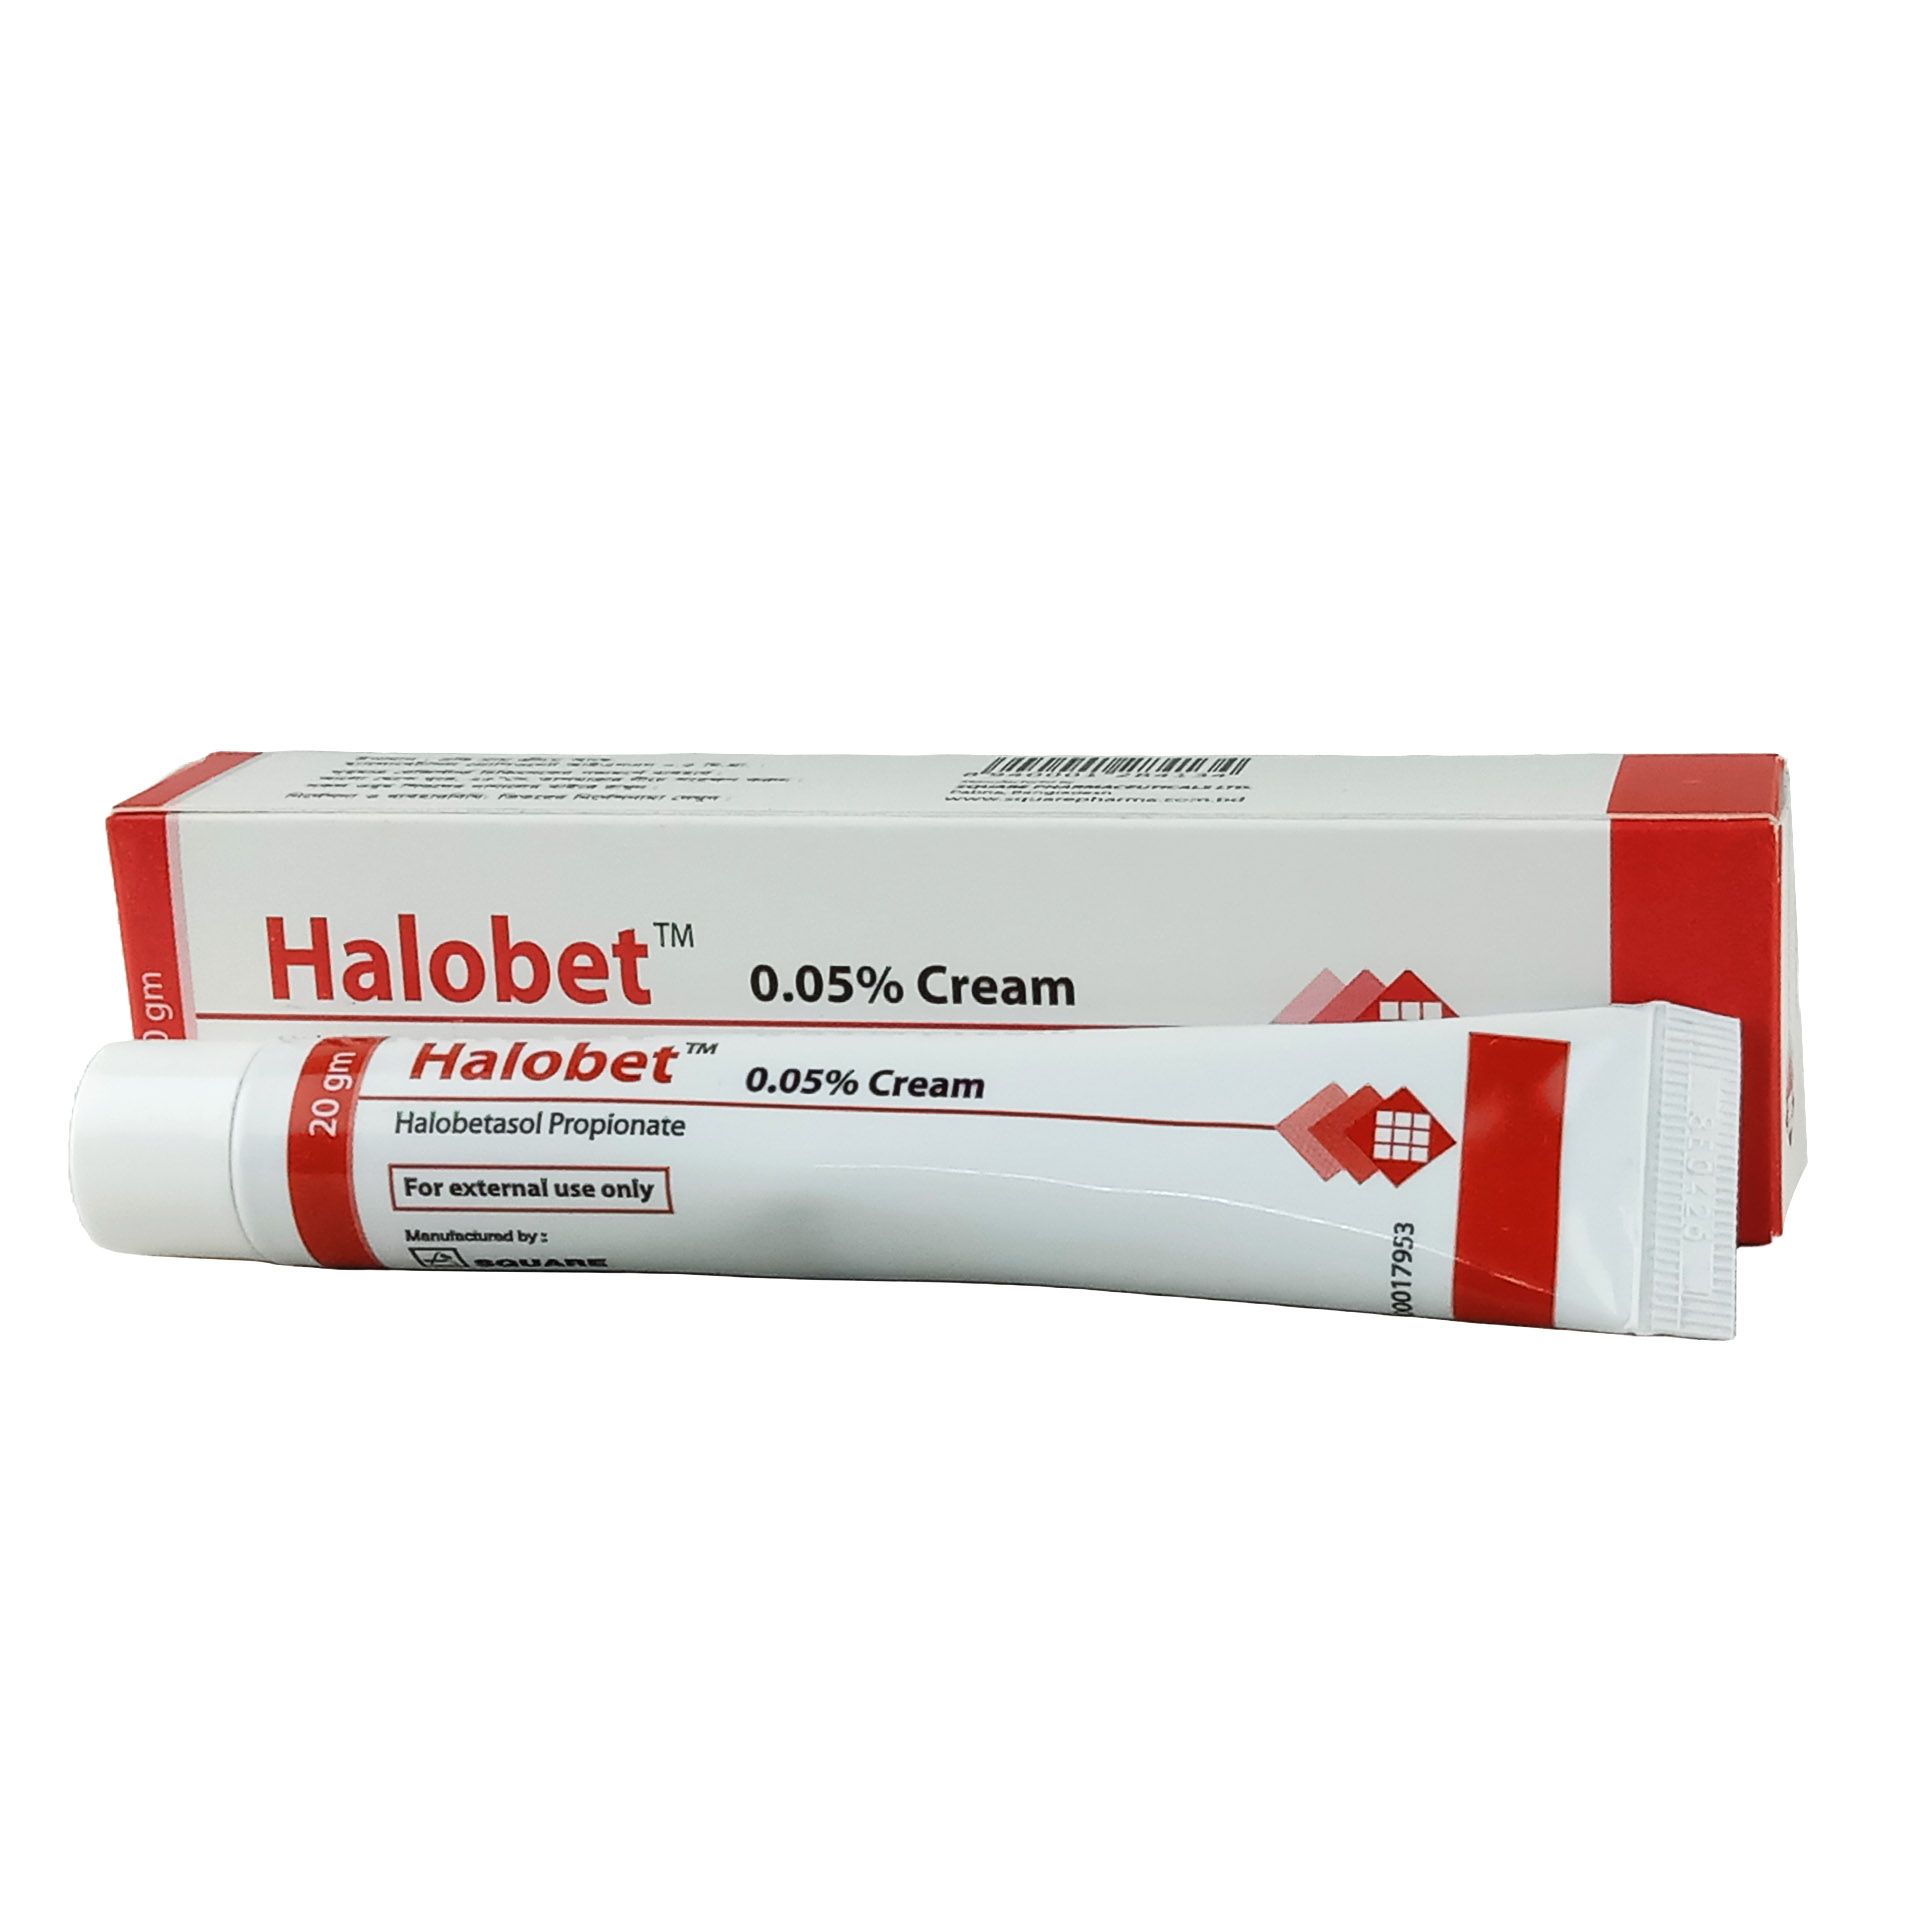 Halobet Cream 0.05% Cream